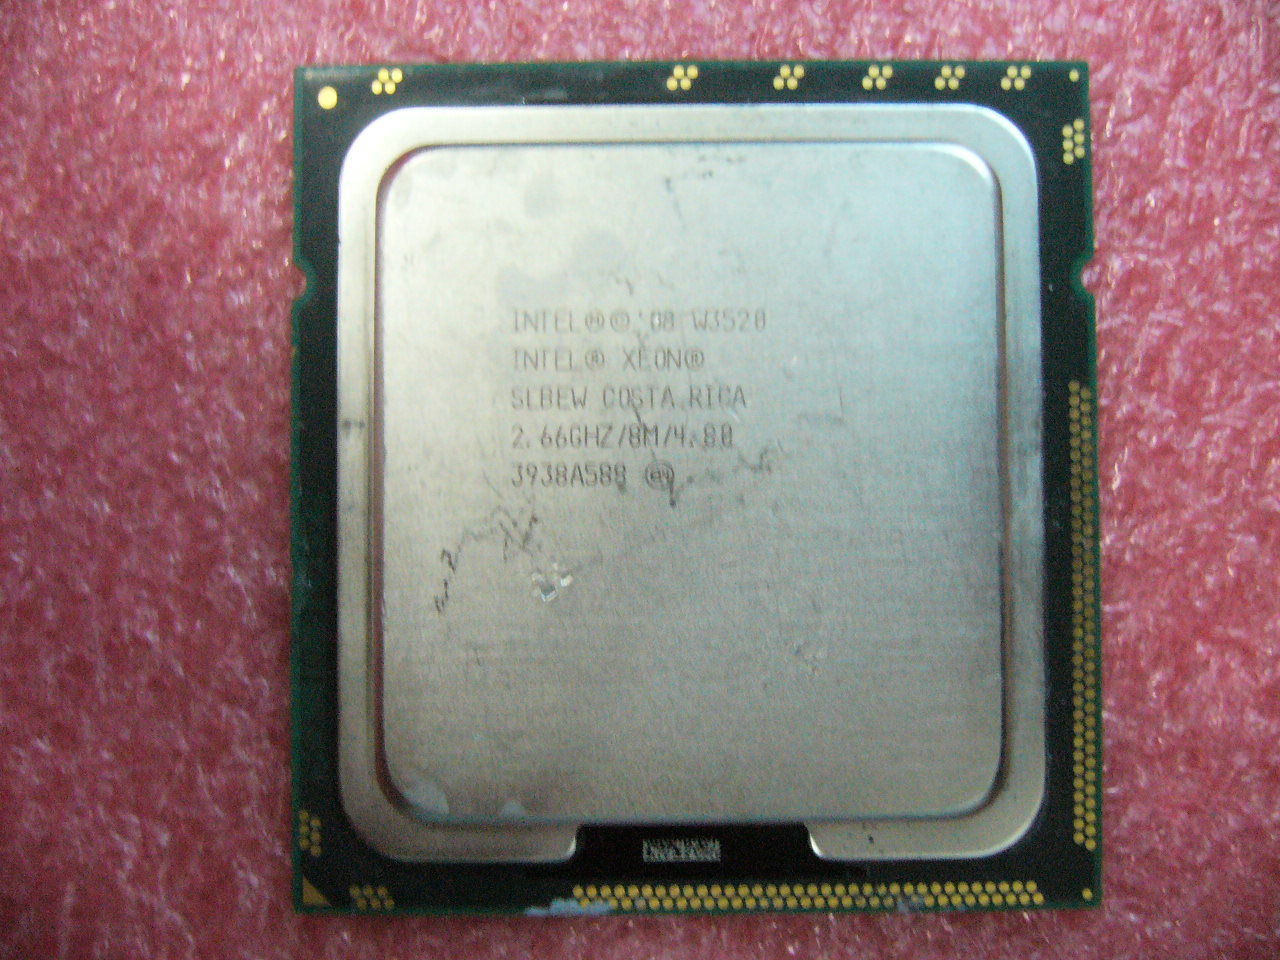 QTY 1x INTEL Quad-Cores CPU W3520 2.66GHZ/8MB 4.8GT/s QPI LGA1366 SLBEW